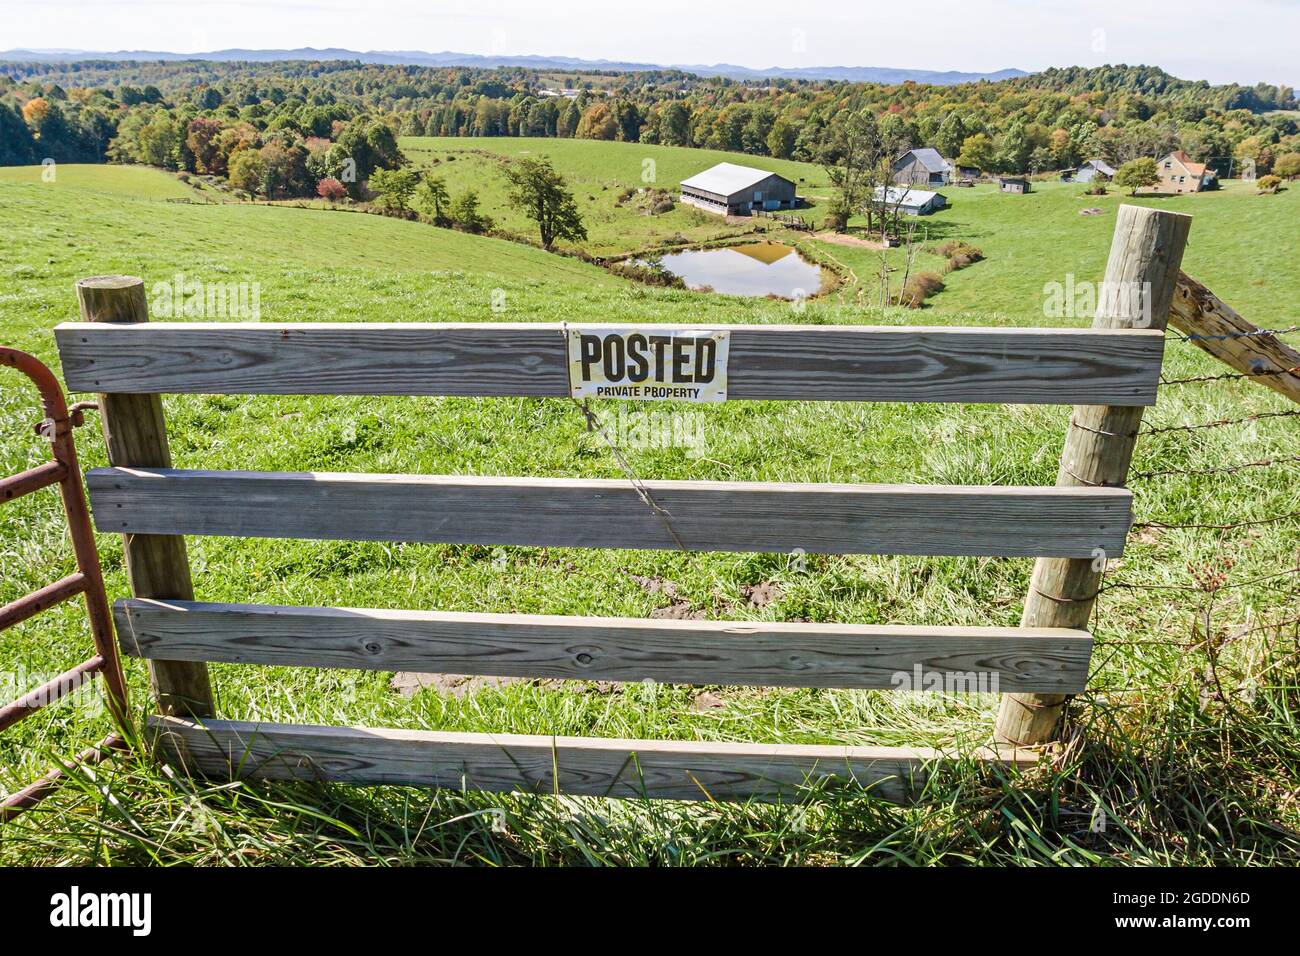 West Virginia Mt. Nebo gepostet Privateigentum Zeichen, Ackerland Bauernhof ländlichen Land Landschaft Tor Zaun Weide, Stockfoto